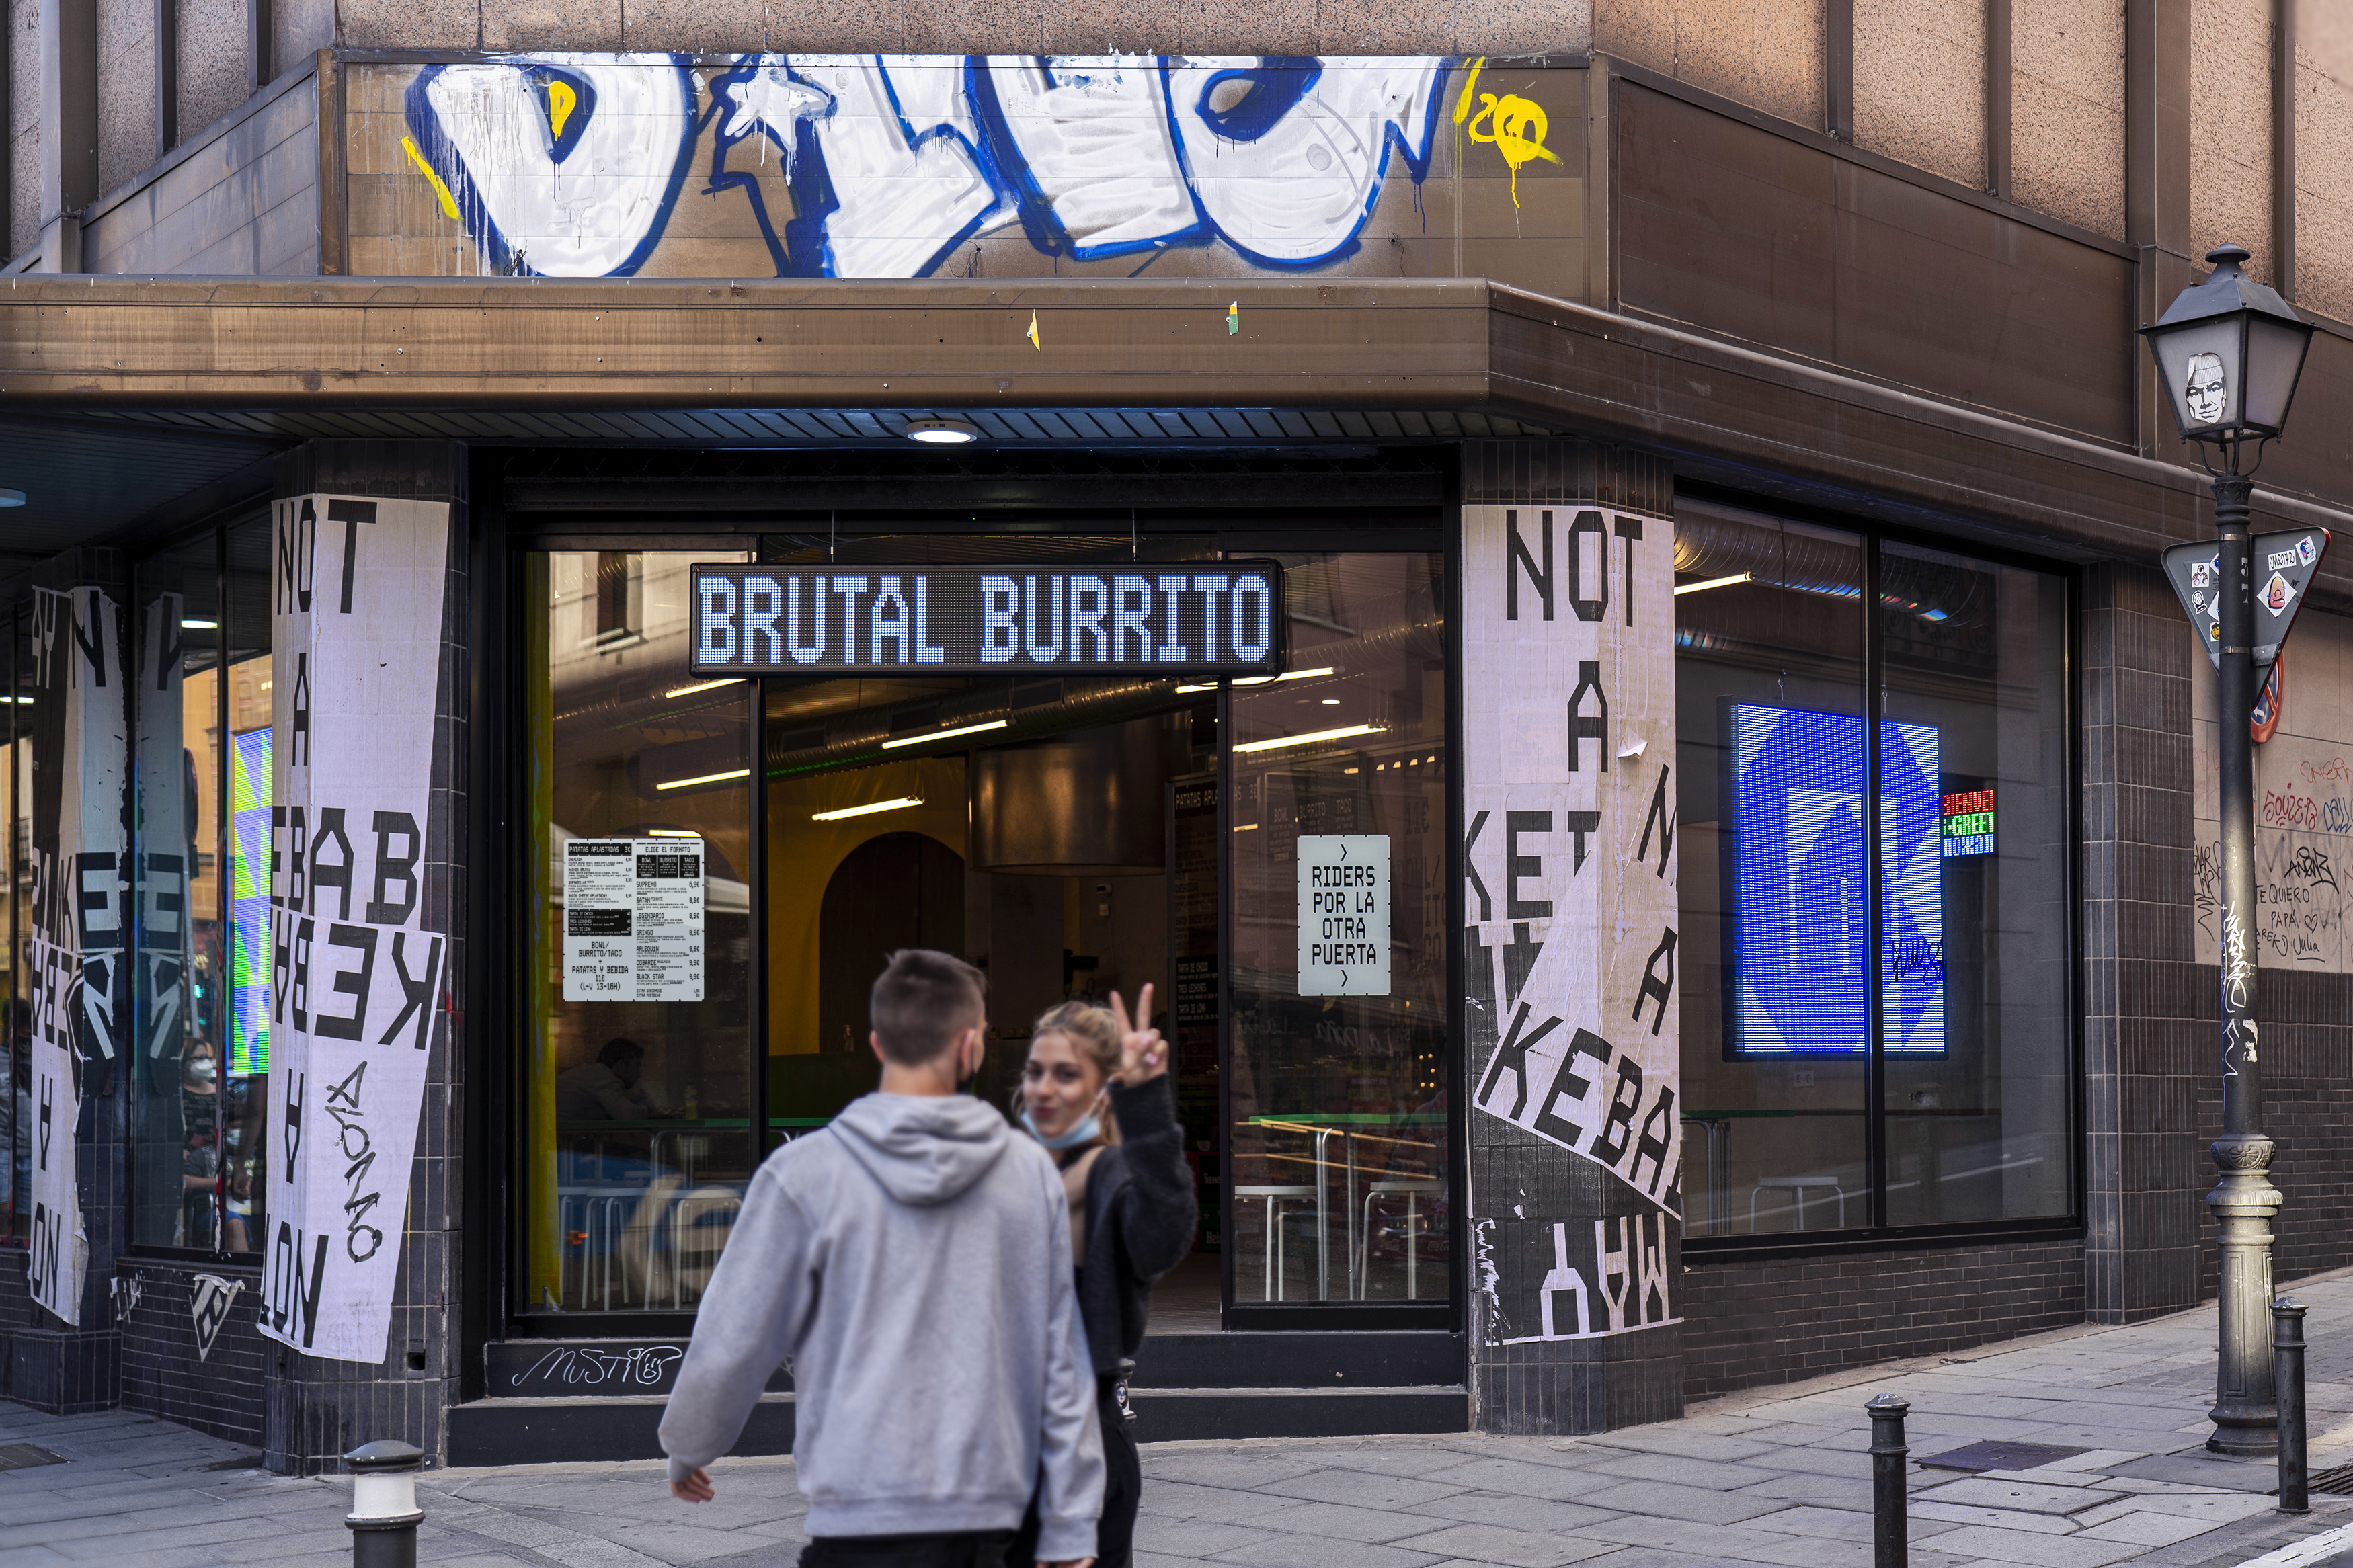 Identitas merek baru untuk burrito berbasis Madrid dan bisnis makanan cepat saji Brutal Burrito oleh Tres Tipos Gráficos